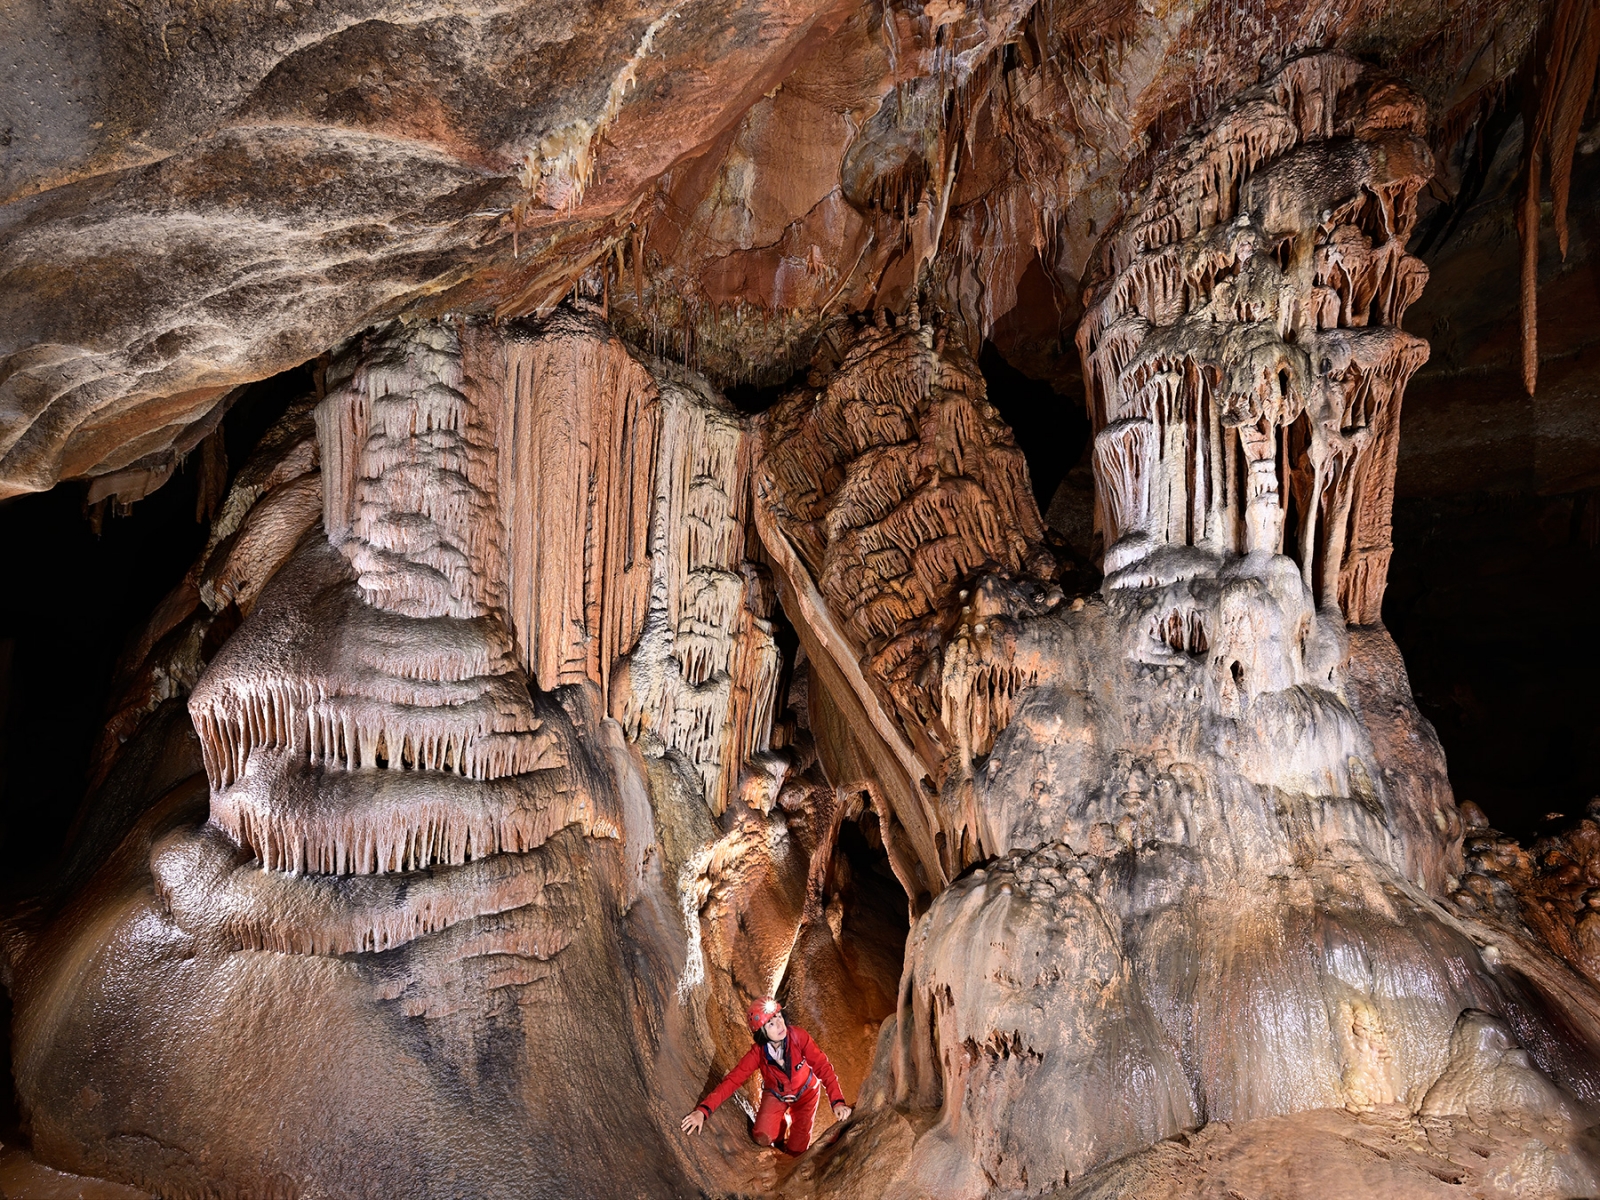 Grotte de Saint-Marcel d'Ardèche (réseau I) - Pilier effondré entre des colonnes avec spéléo au milieu 